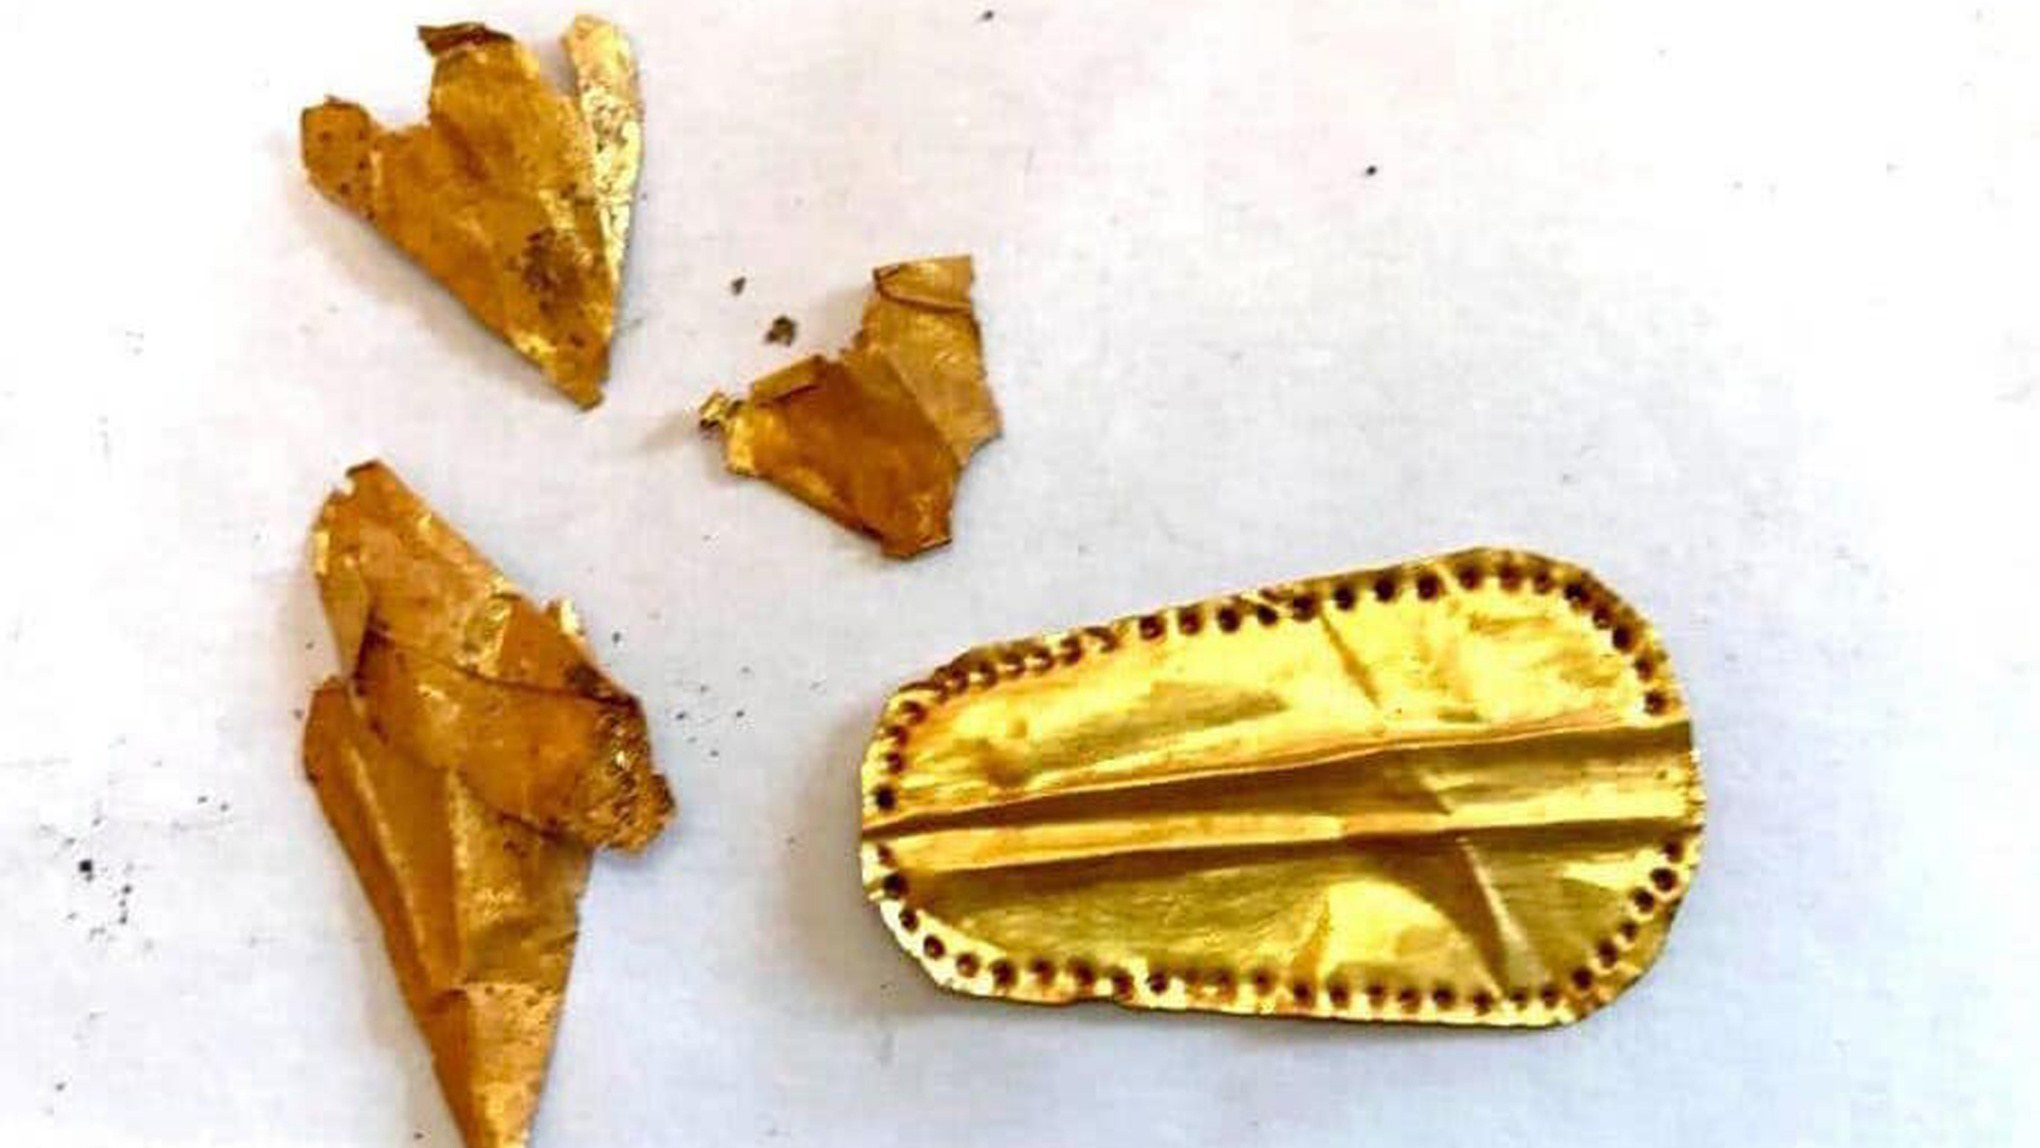 Hiji gambar annotated nembongkeun létah emas kapanggih dina necropolis Qewaisna di Mesir.